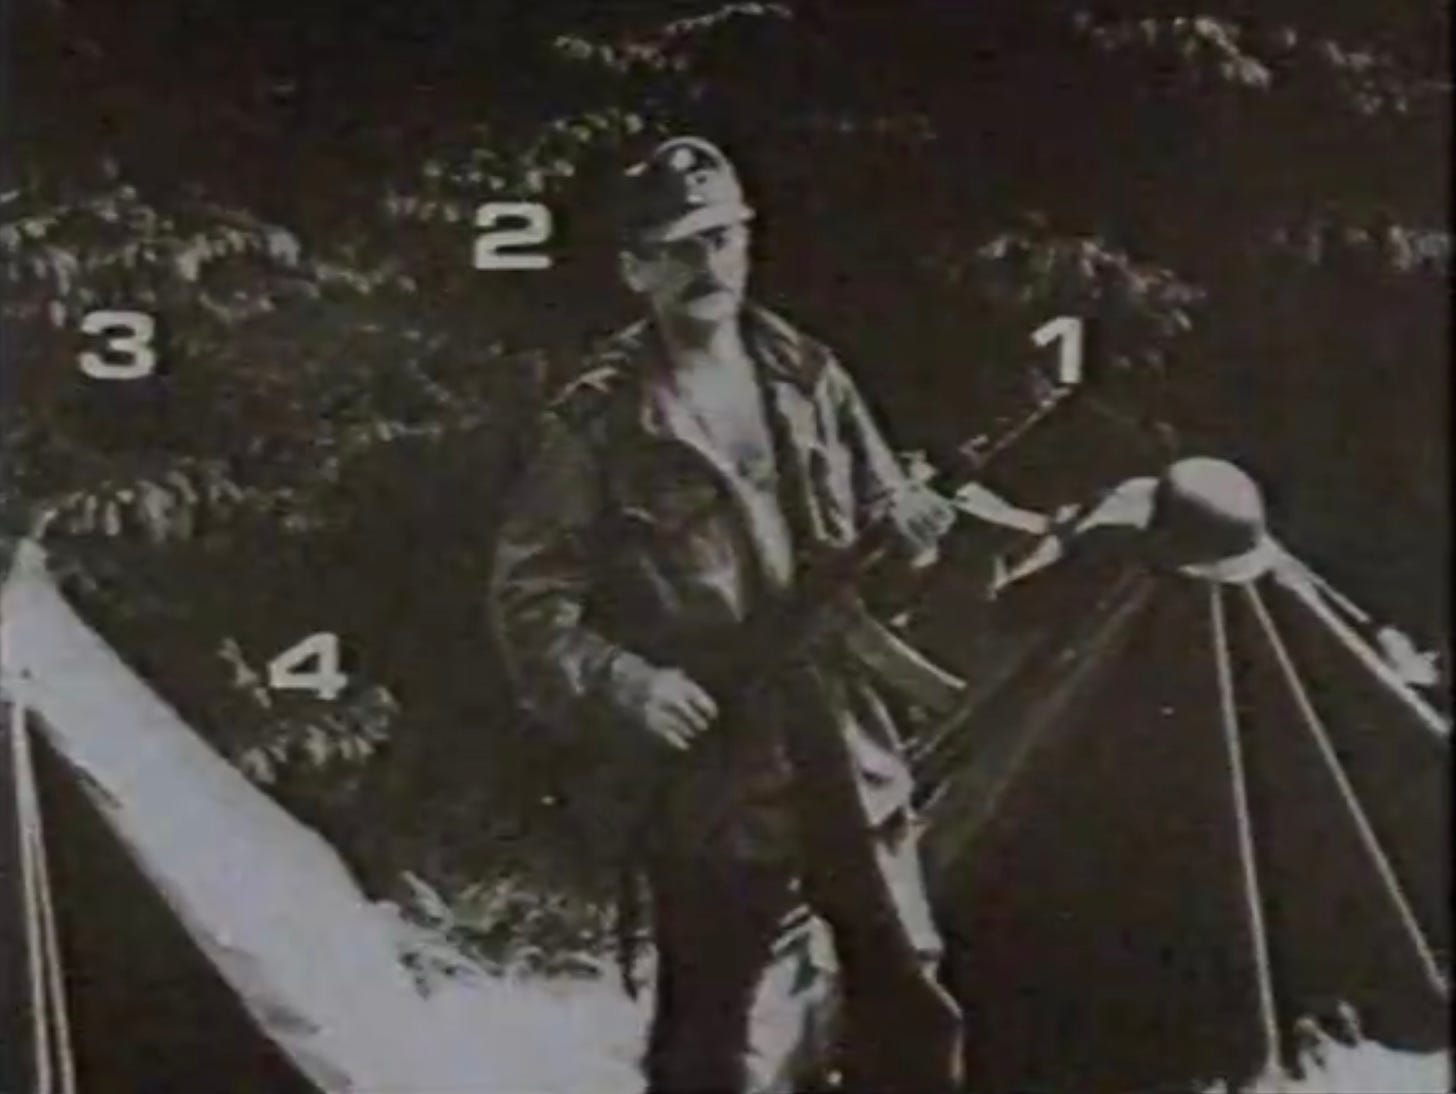 A man holding an assault rifle.